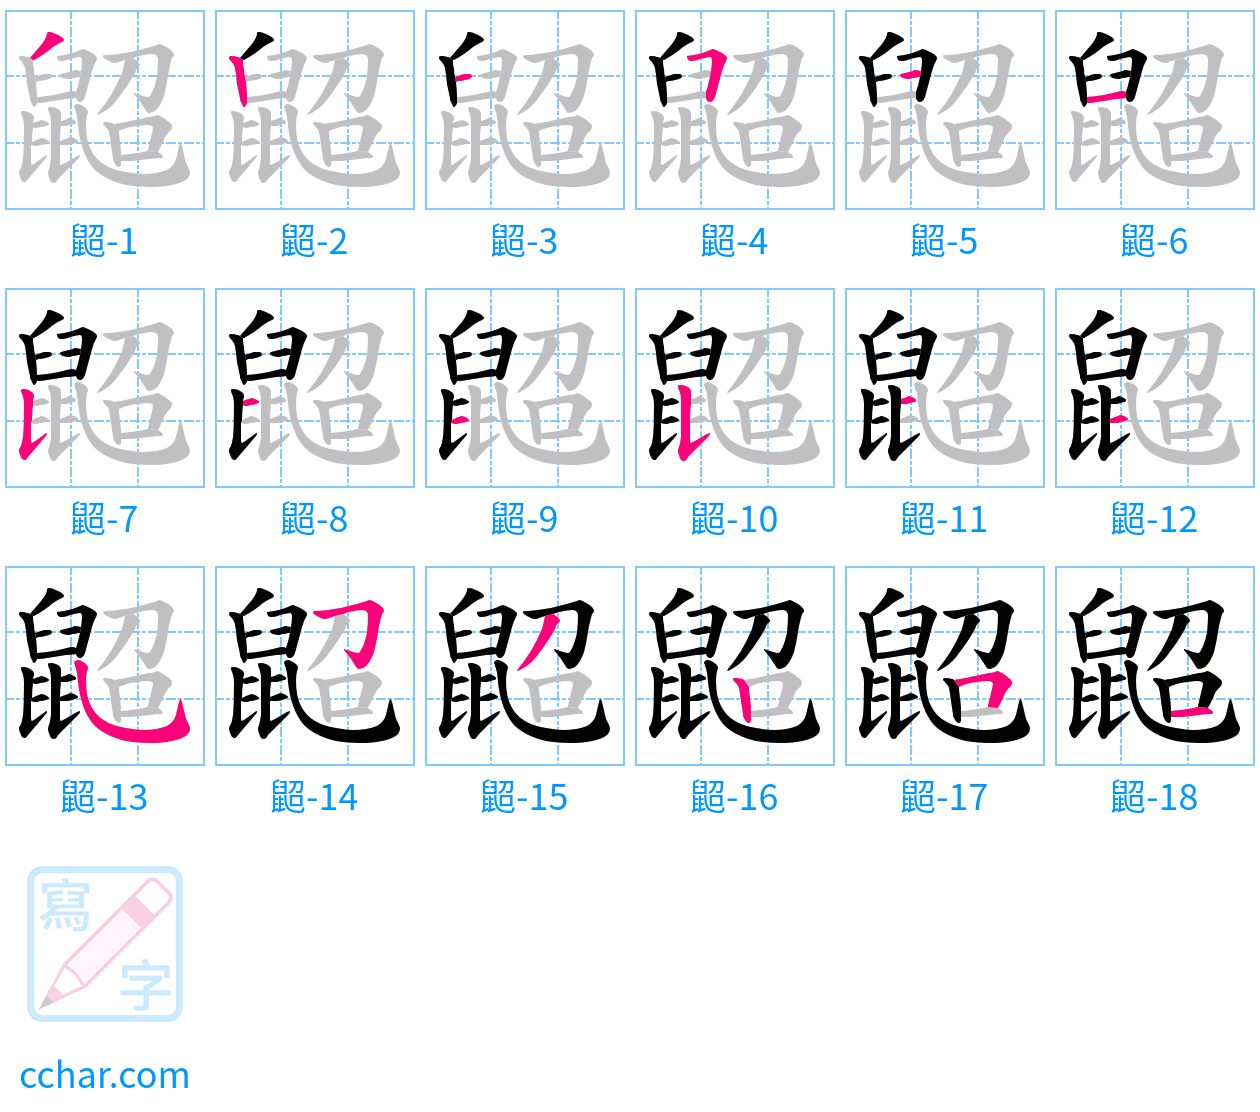 鼦 stroke order step-by-step diagram